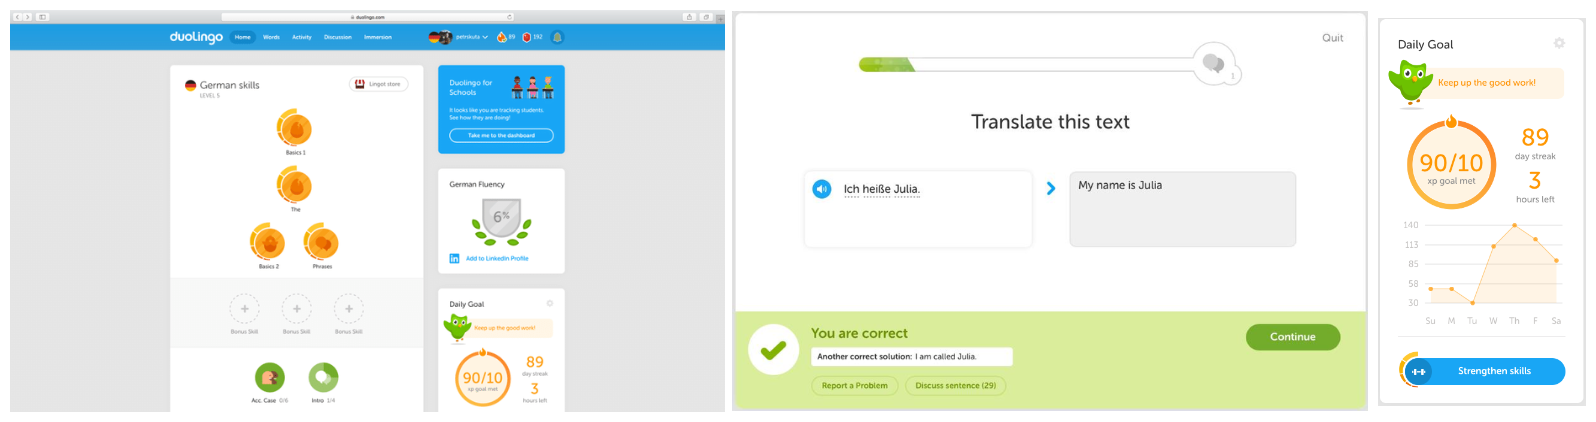 Duolingo's gamified screen